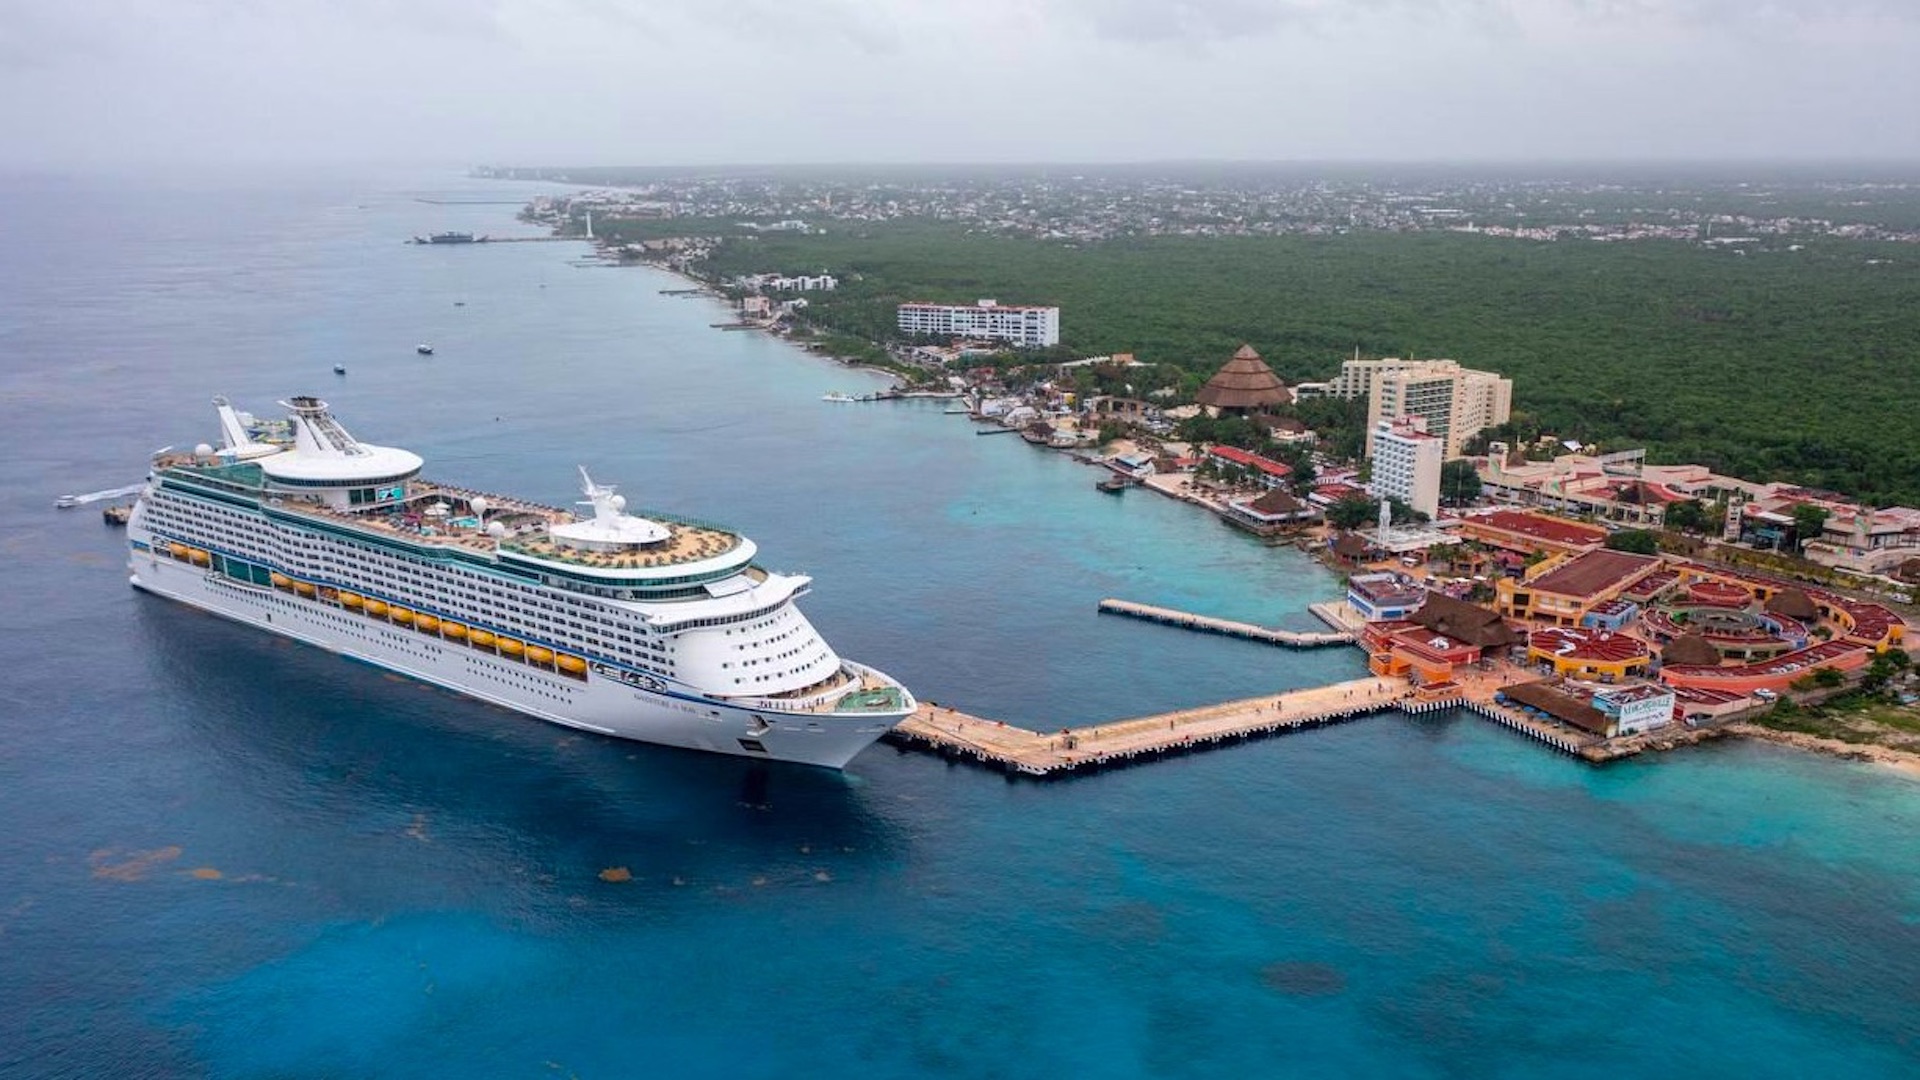 Cruceros regresan al Caribe mexicano. Foto de Twitter @CarlosJoaquin